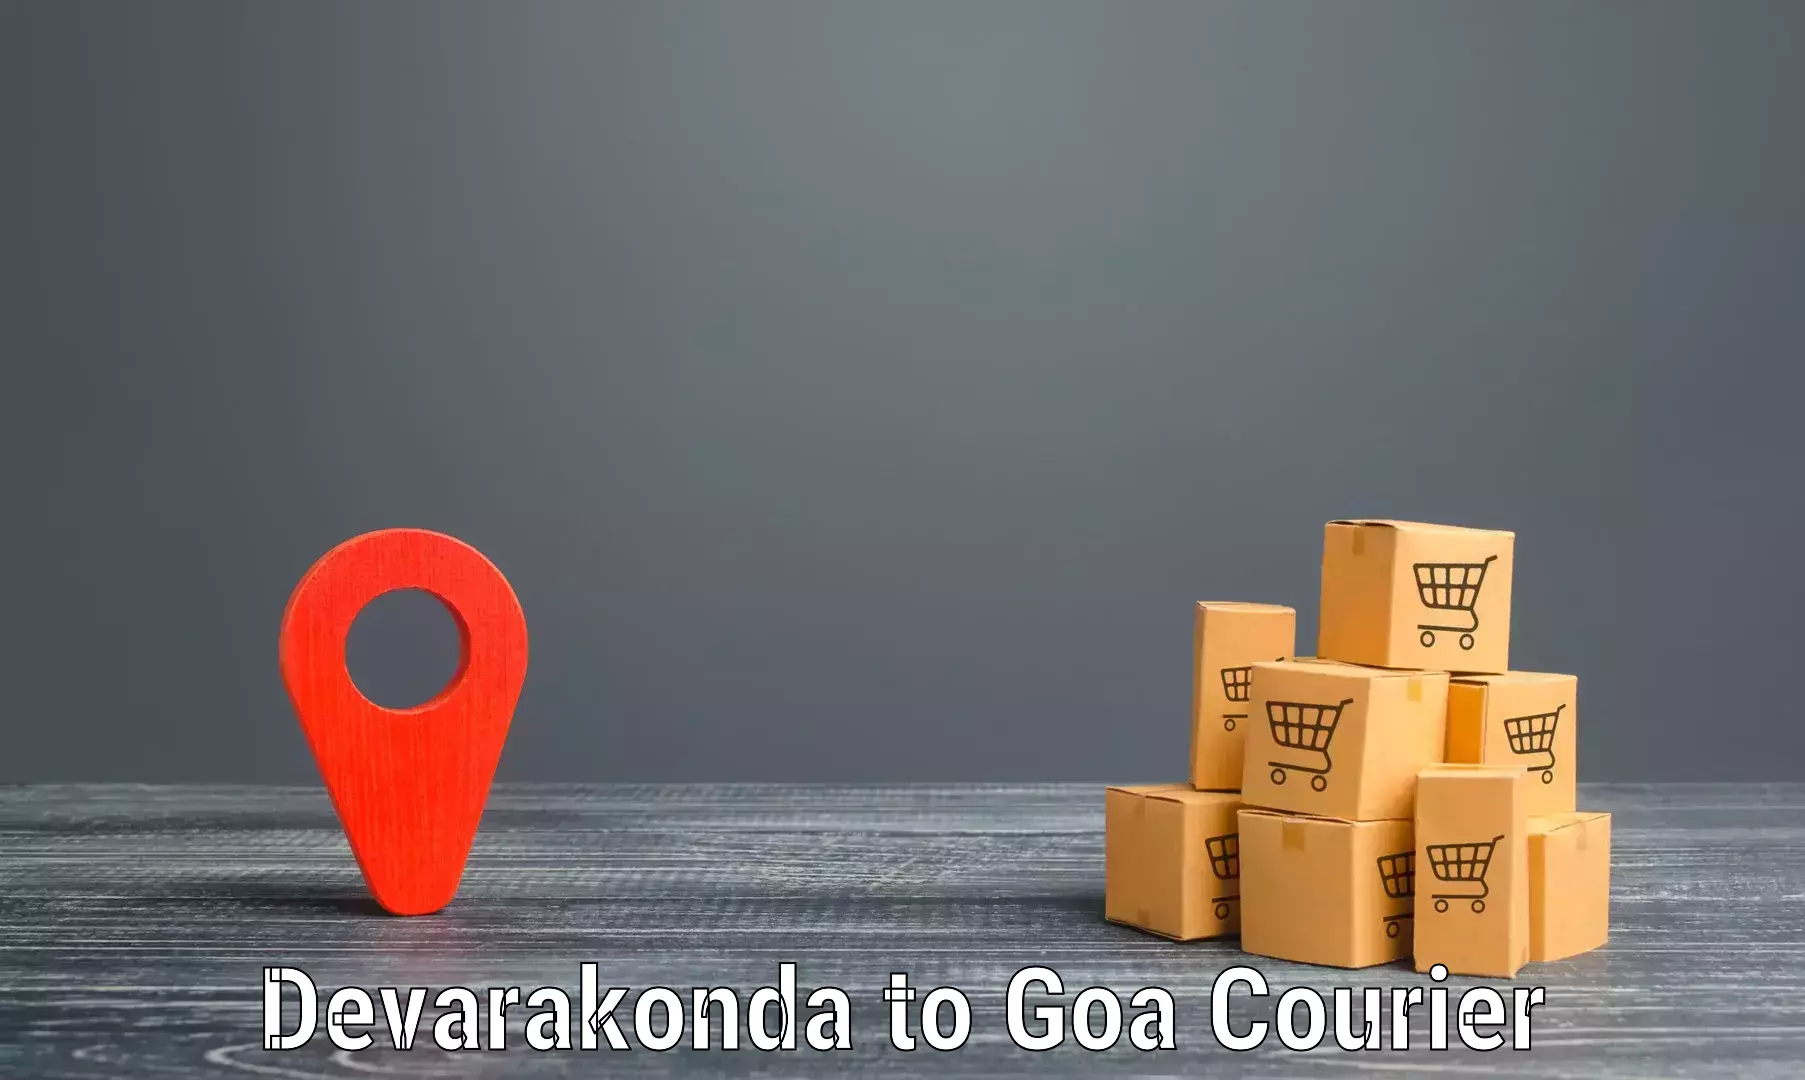 Advanced shipping network Devarakonda to Goa